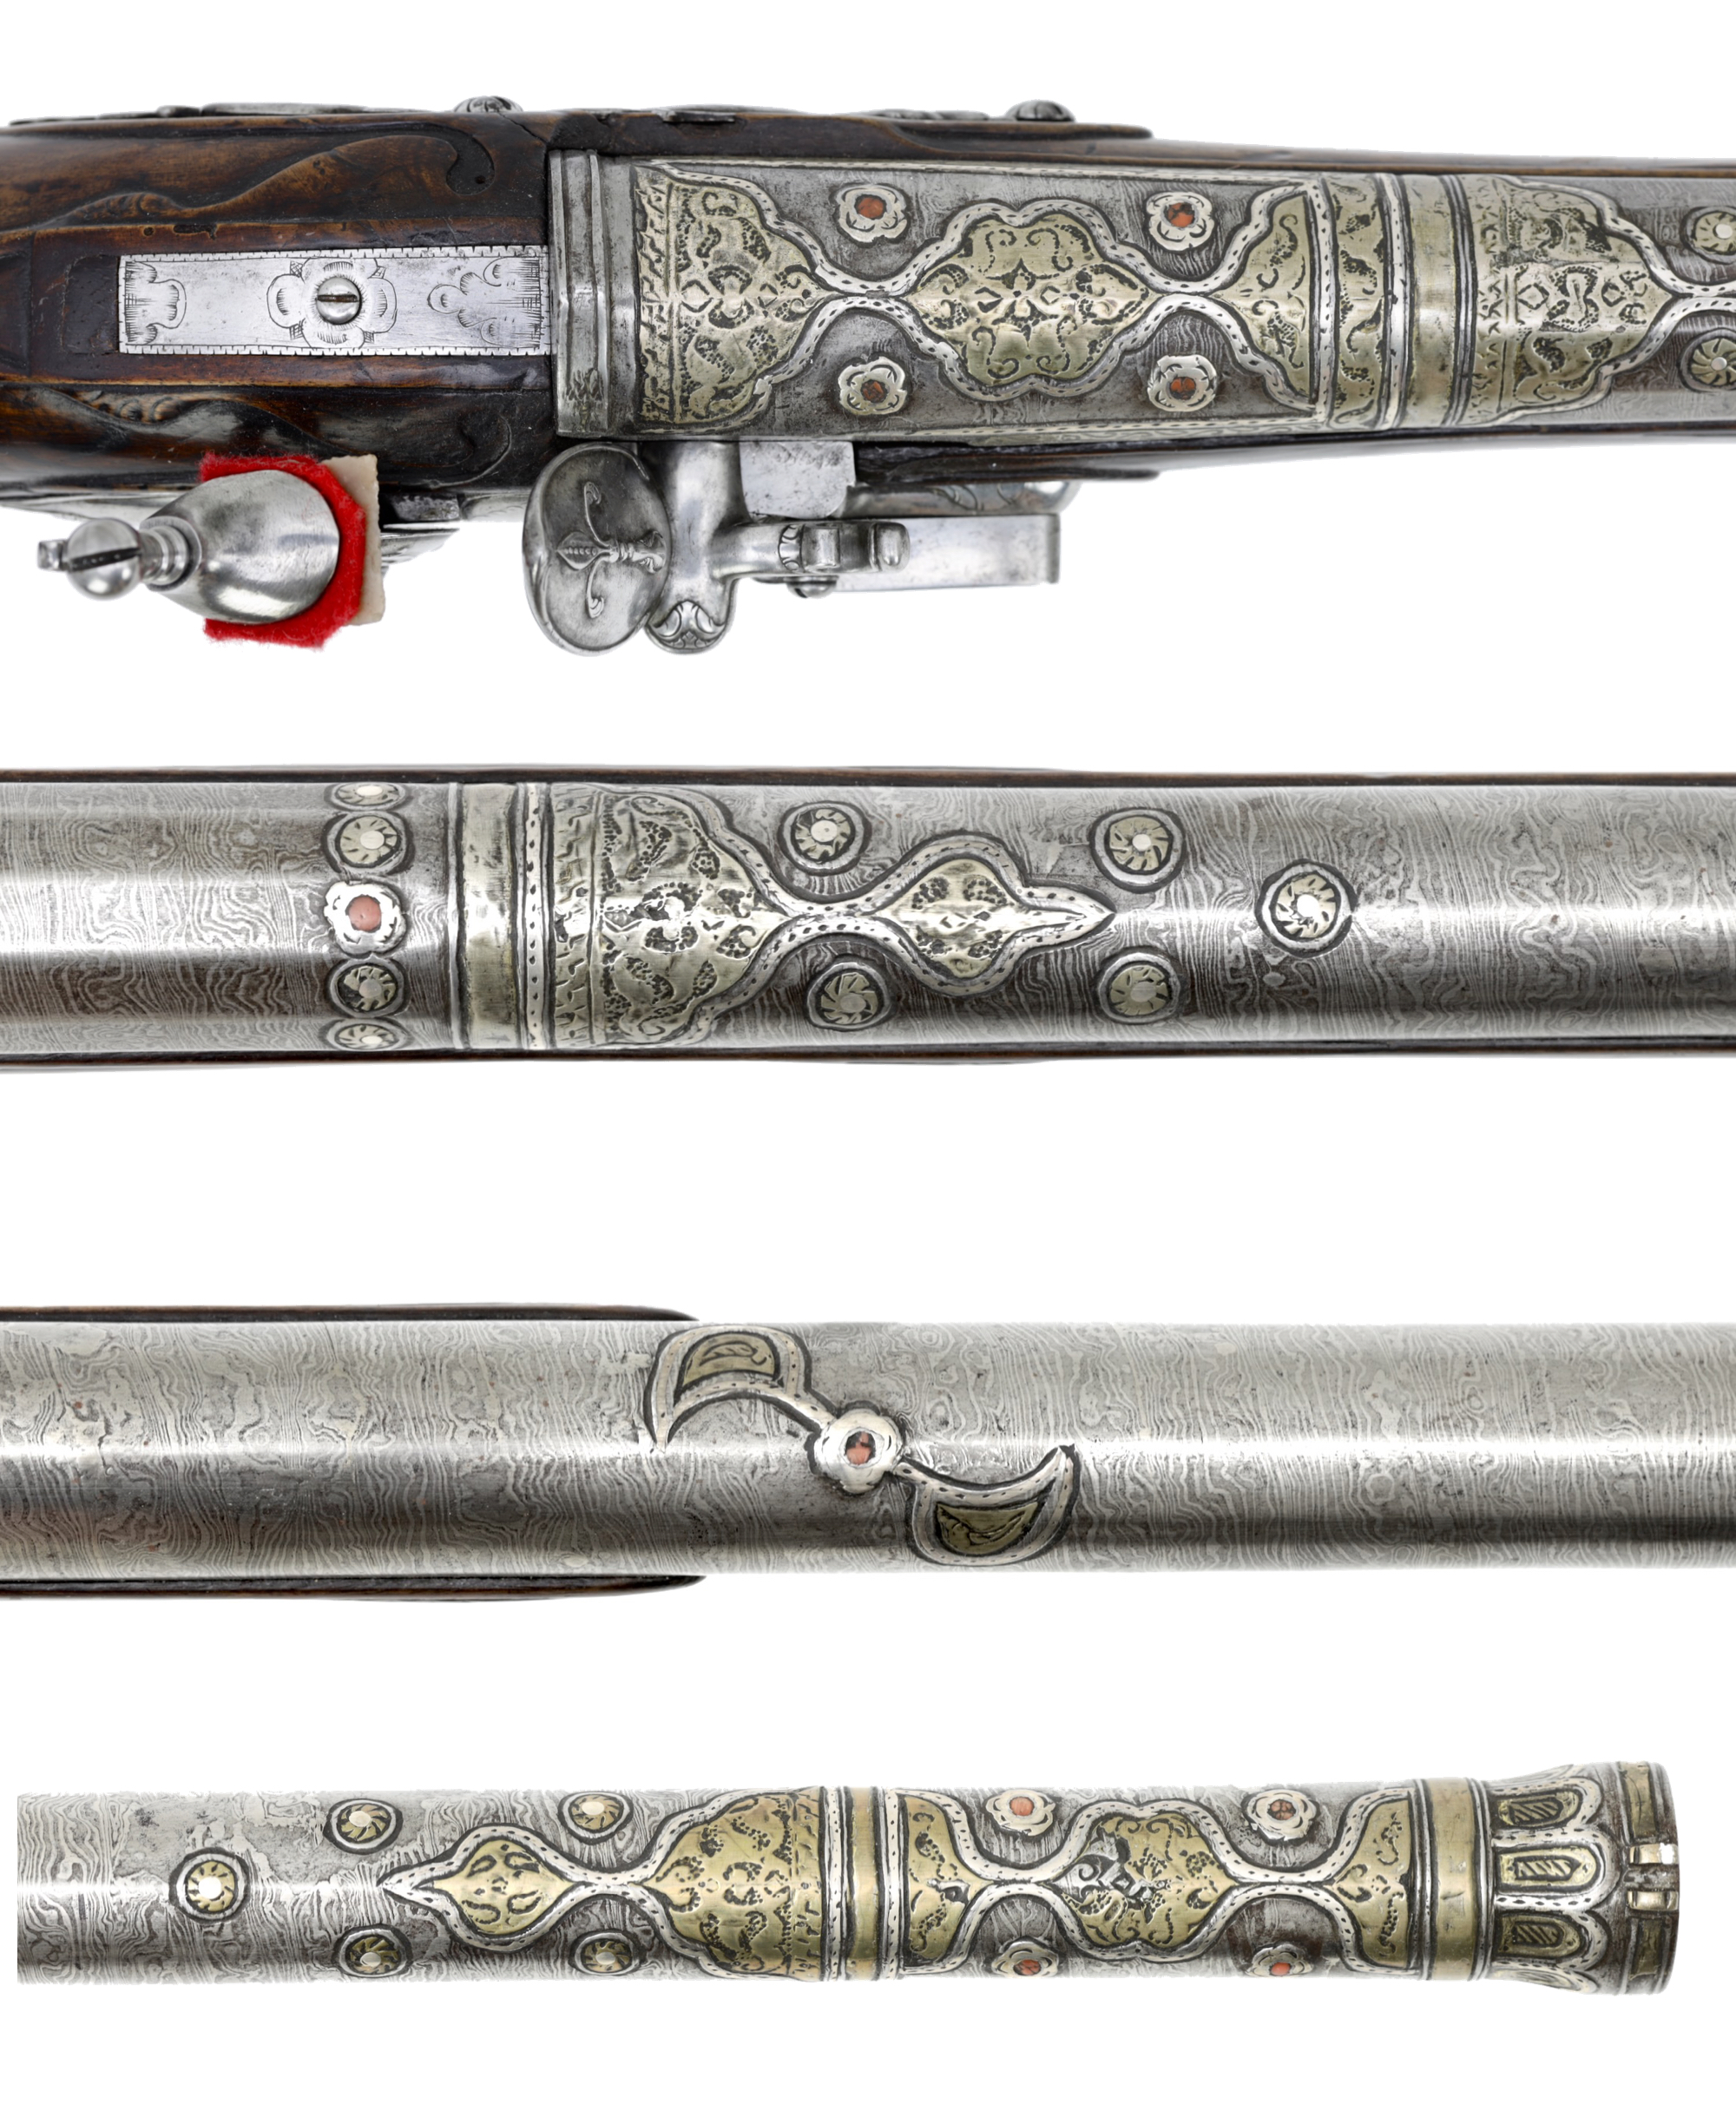 ottoman-gun-barrel.jpg